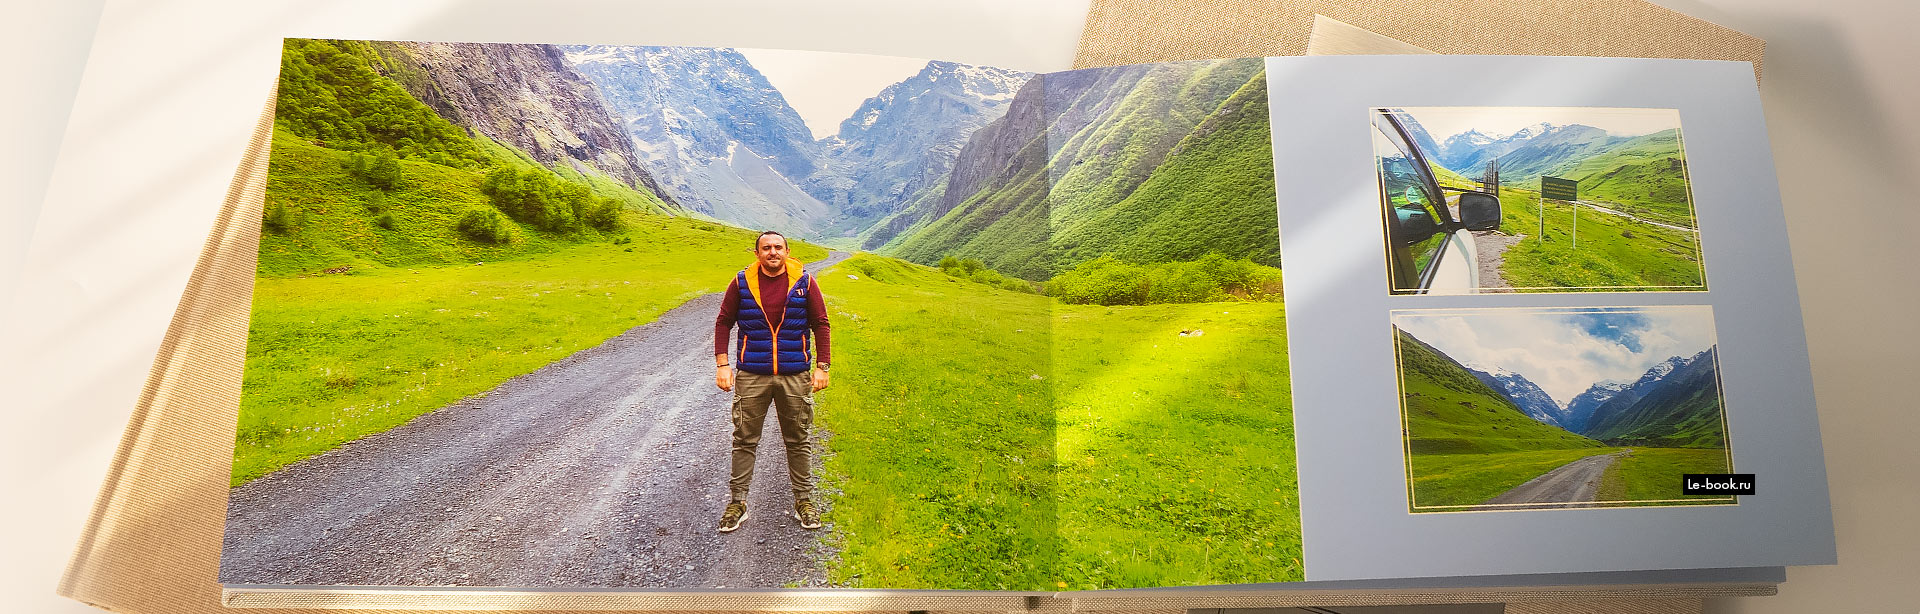 Верстка фотокниги из путешествий в горы, обложка тканевая холст